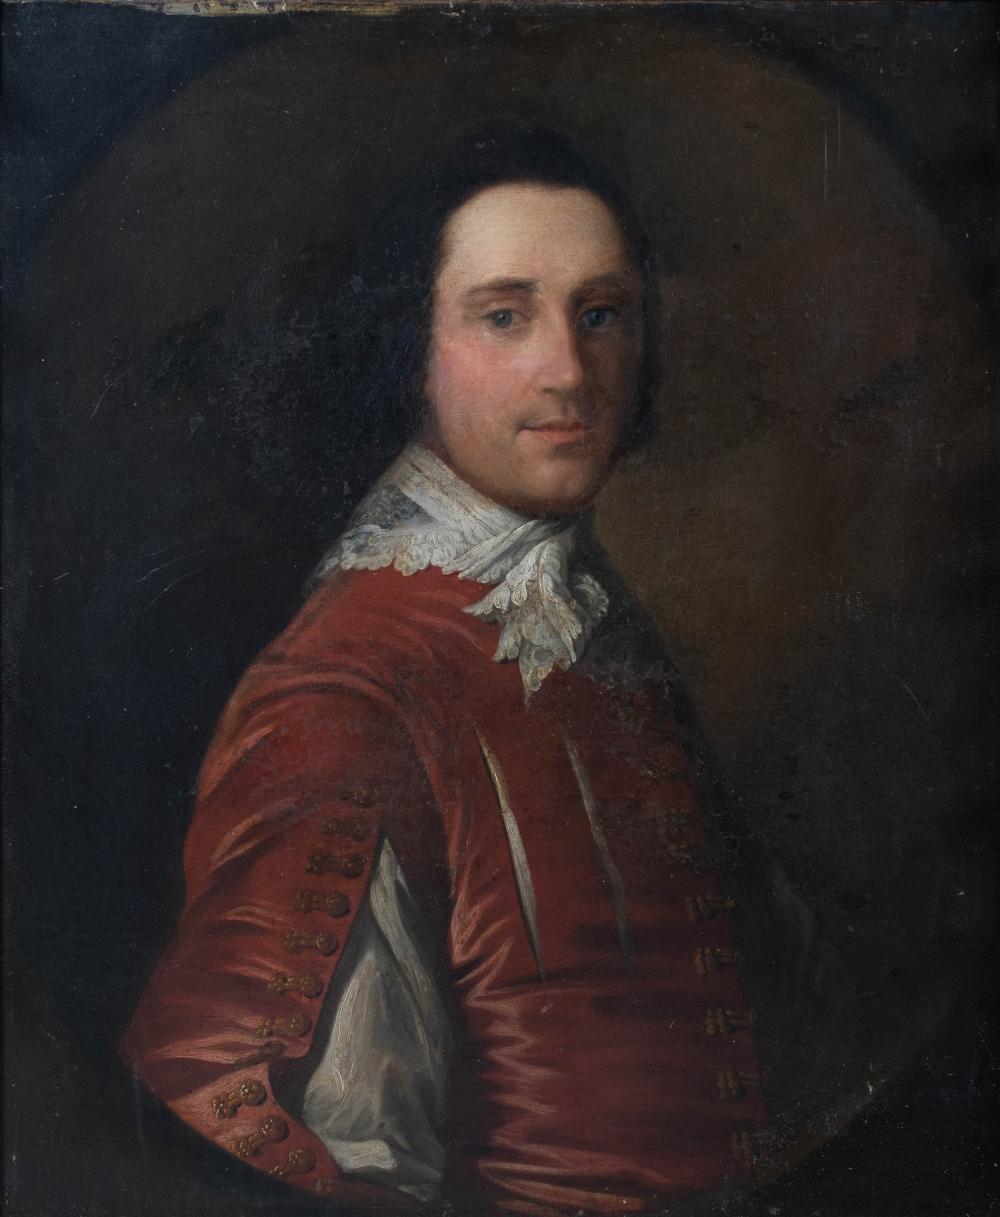 ALLAN RAMSAY, BRITISH 1713-1784,